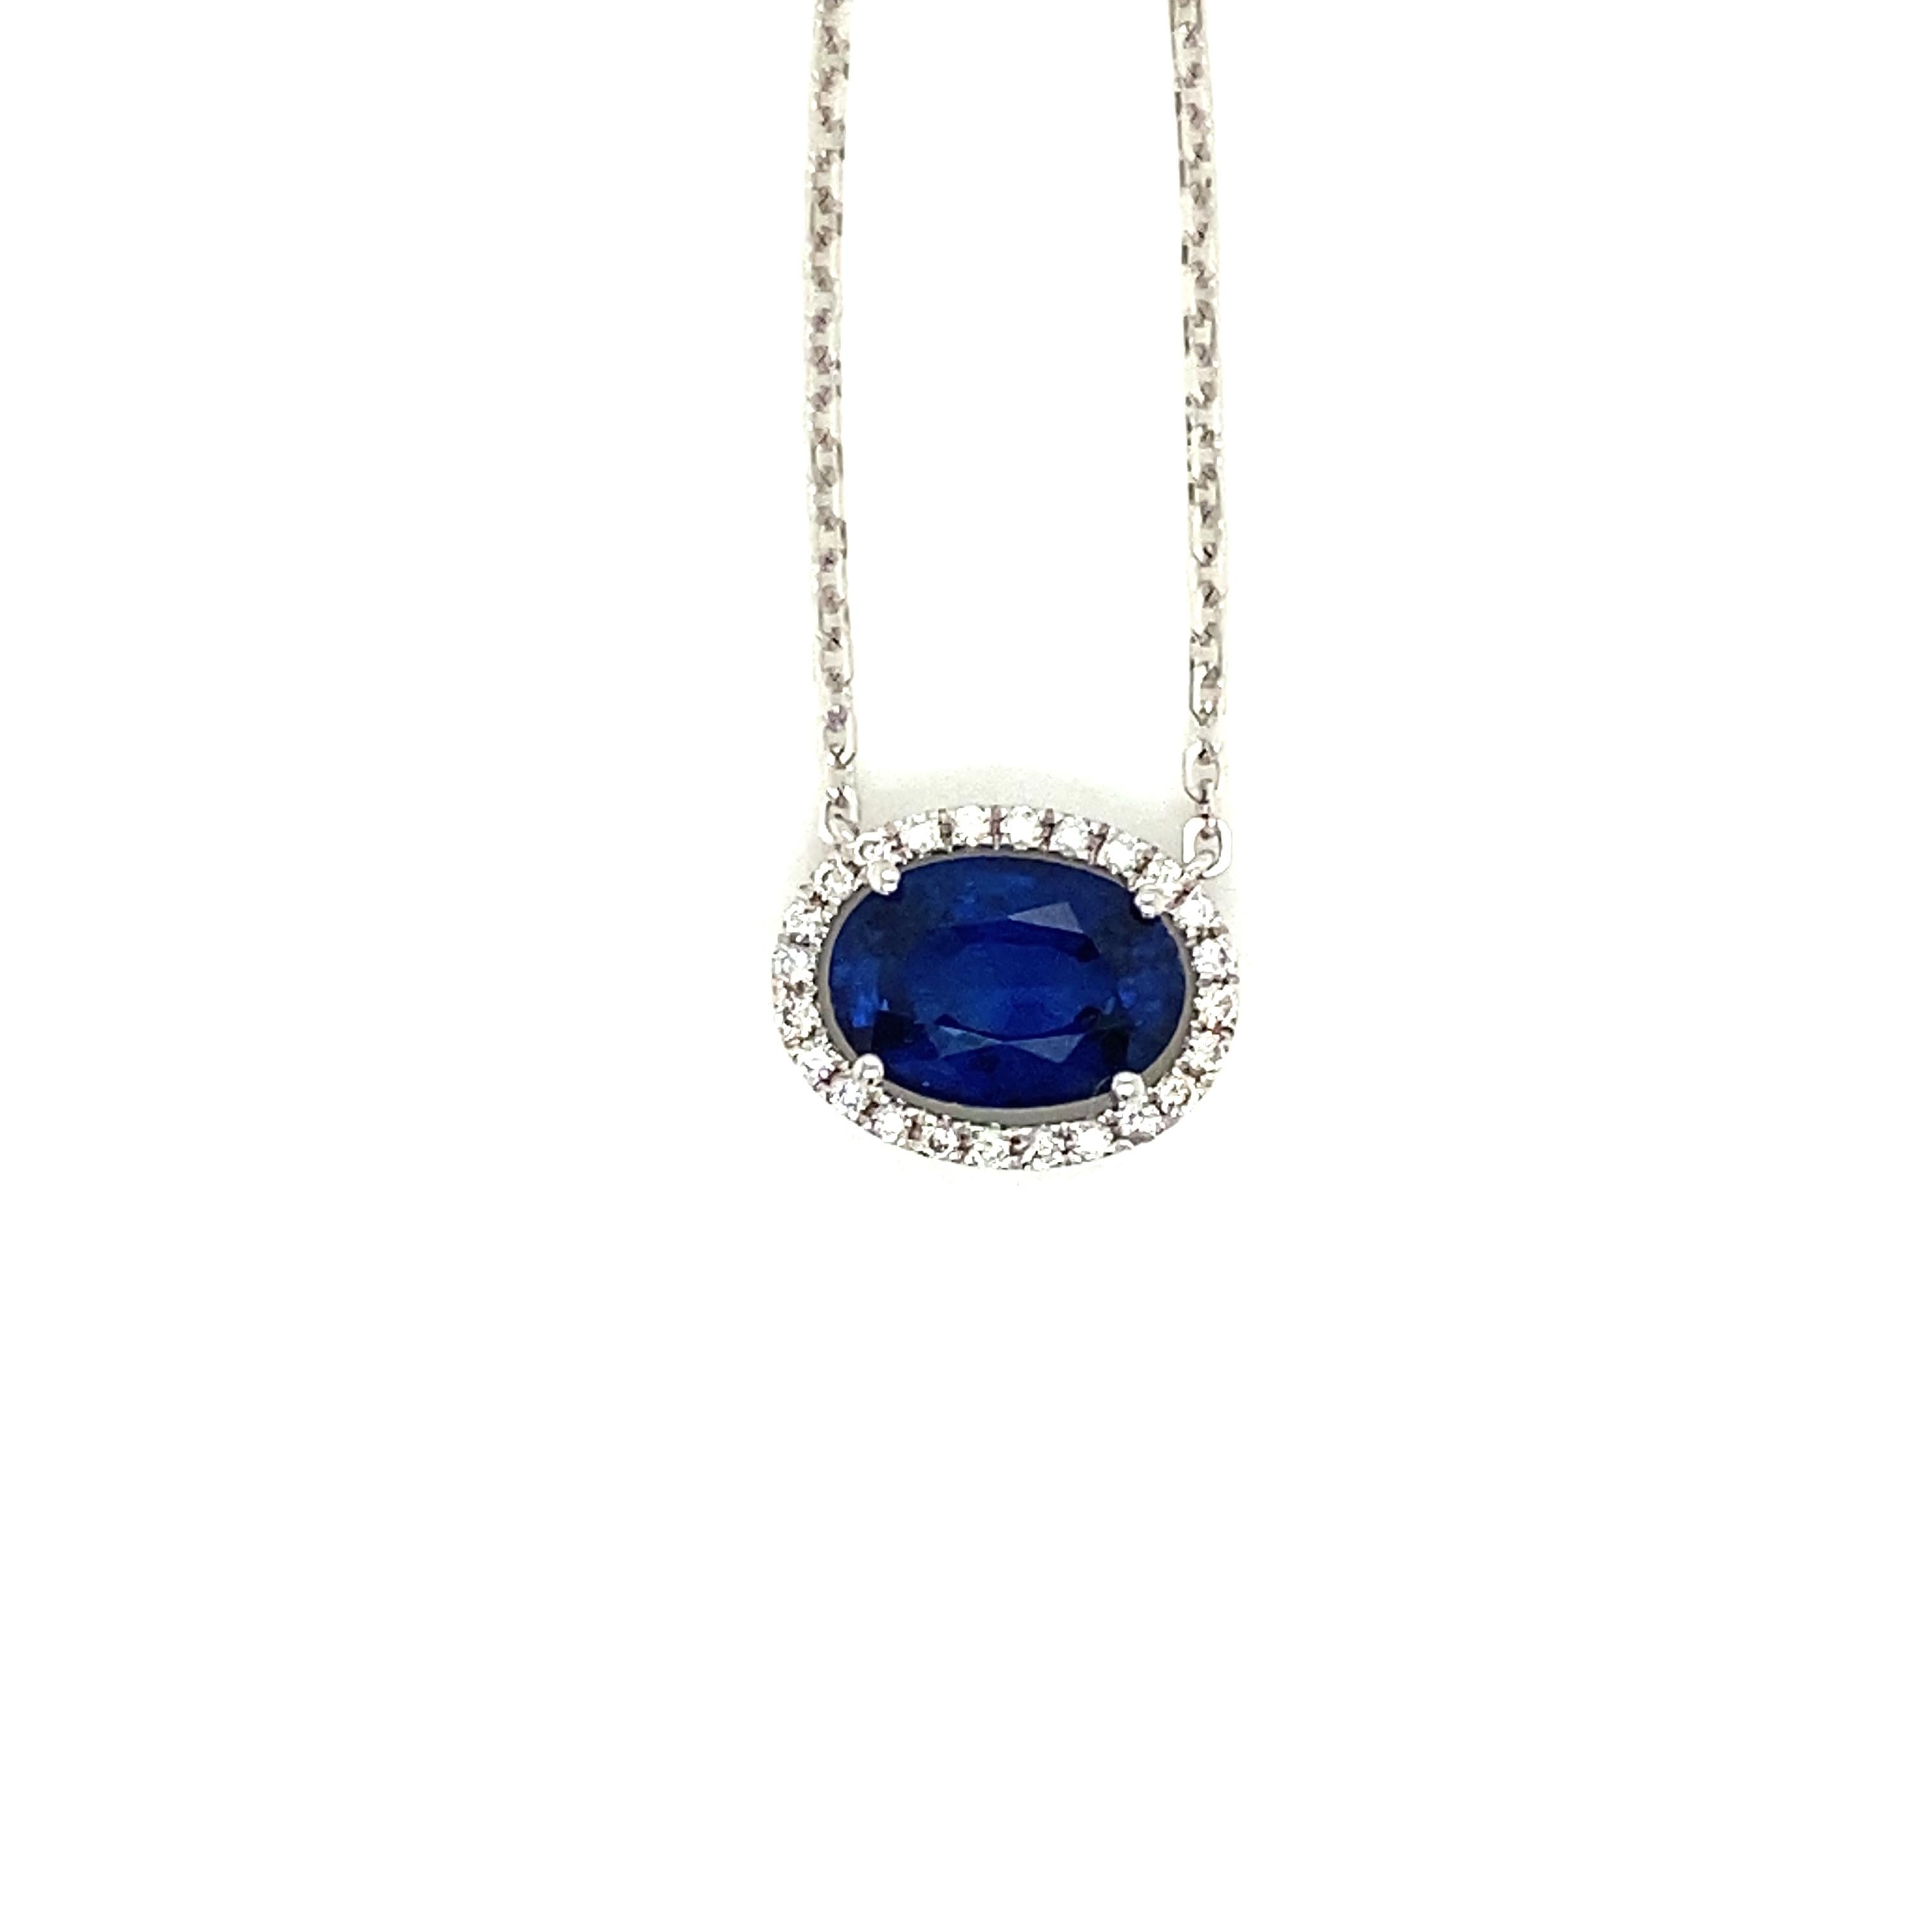 2.29 Karat Ovalschliff Vivid Blue Sapphire und White Diamond Anhänger Halskette:

Der wunderschöne Anhänger besteht aus einem lebhaften blauen Saphir im Ovalschliff von 2,29 Karat, der von einem Kranz weißer Diamanten im Rundbrillantschliff von 0,15